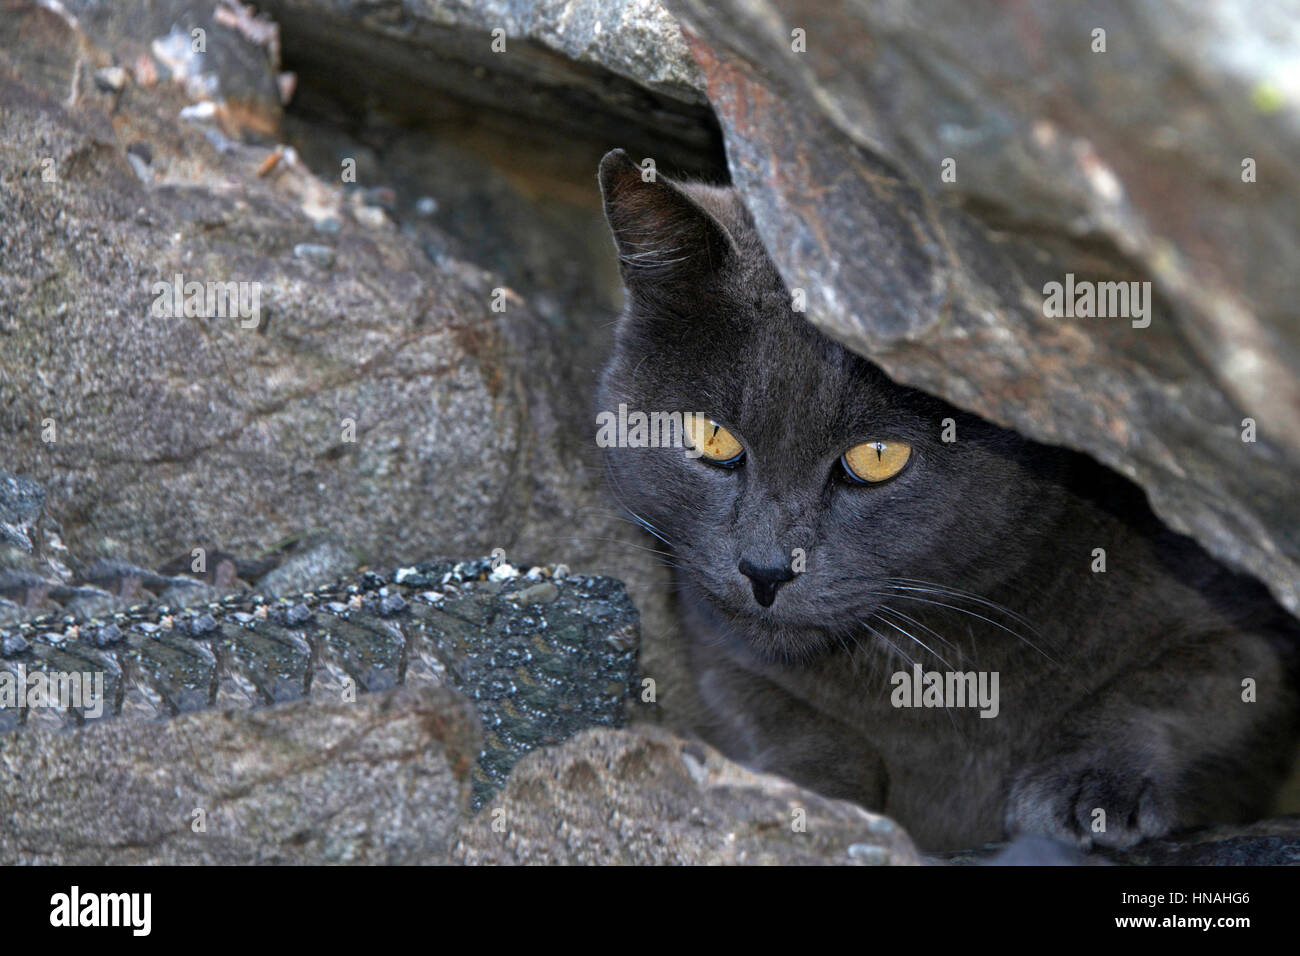 Streuner oder Feral grauen Chartreux Katze versteckt sich in den Felsen am Strand. Trap-Neutrum-Return-Programme helfen die wilde Katze Bevölkerung gering zu halten. Stockfoto